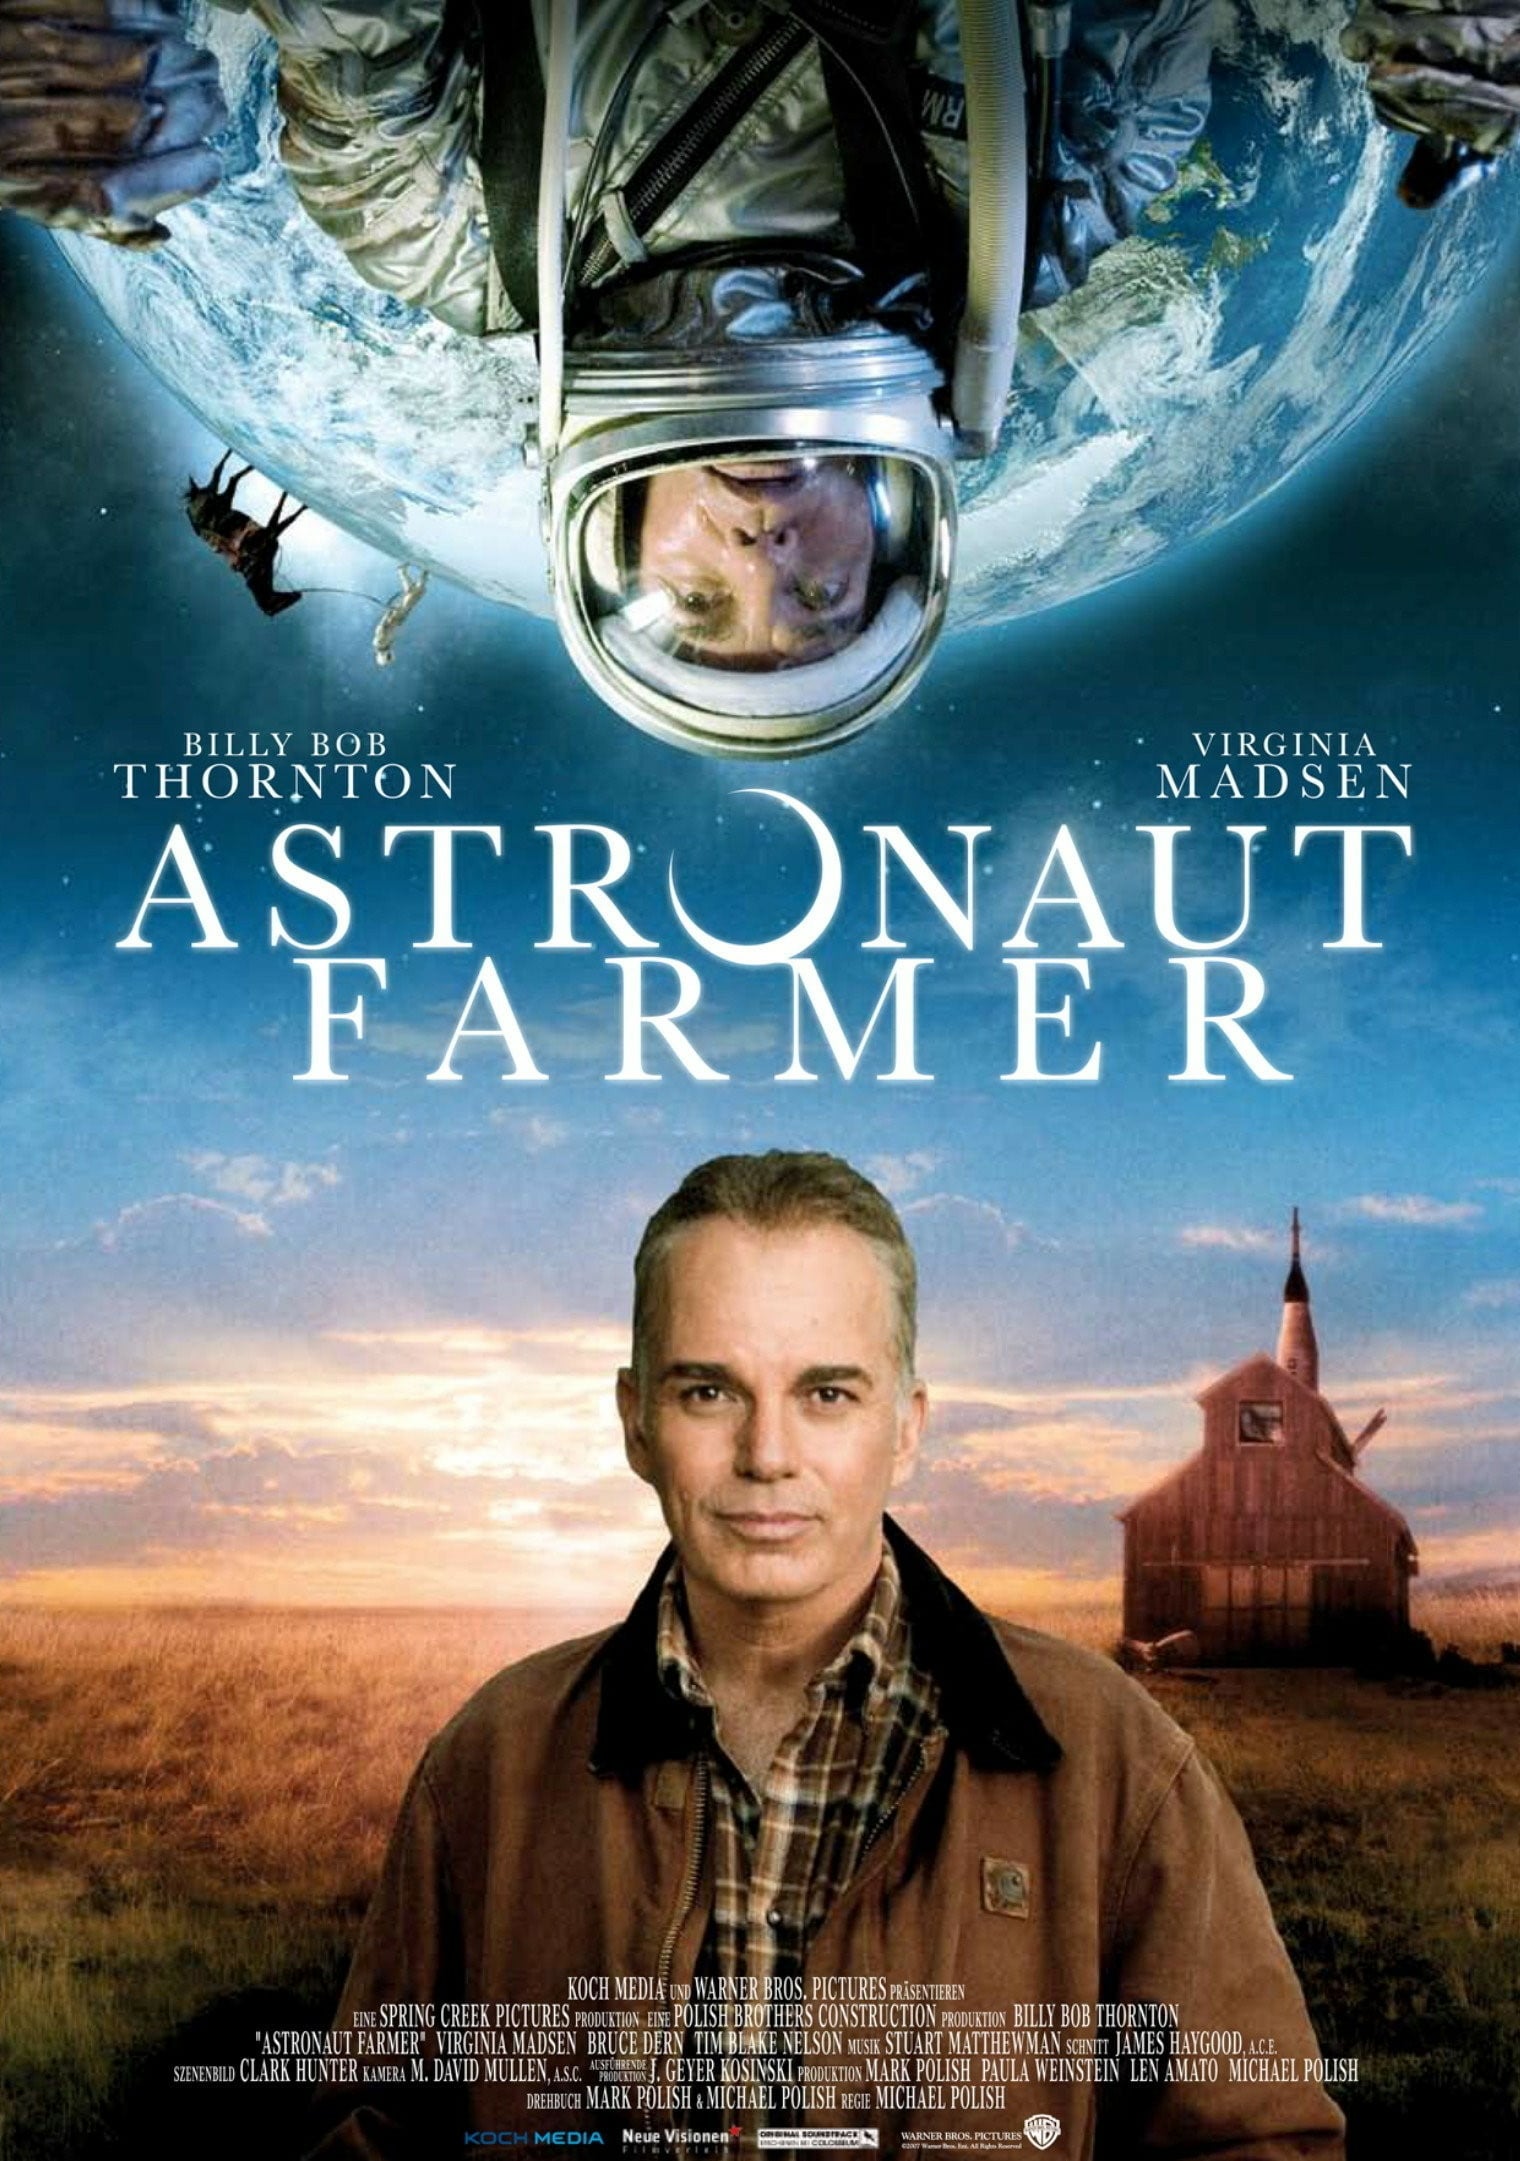 Plakat von "Astronaut Farmer"